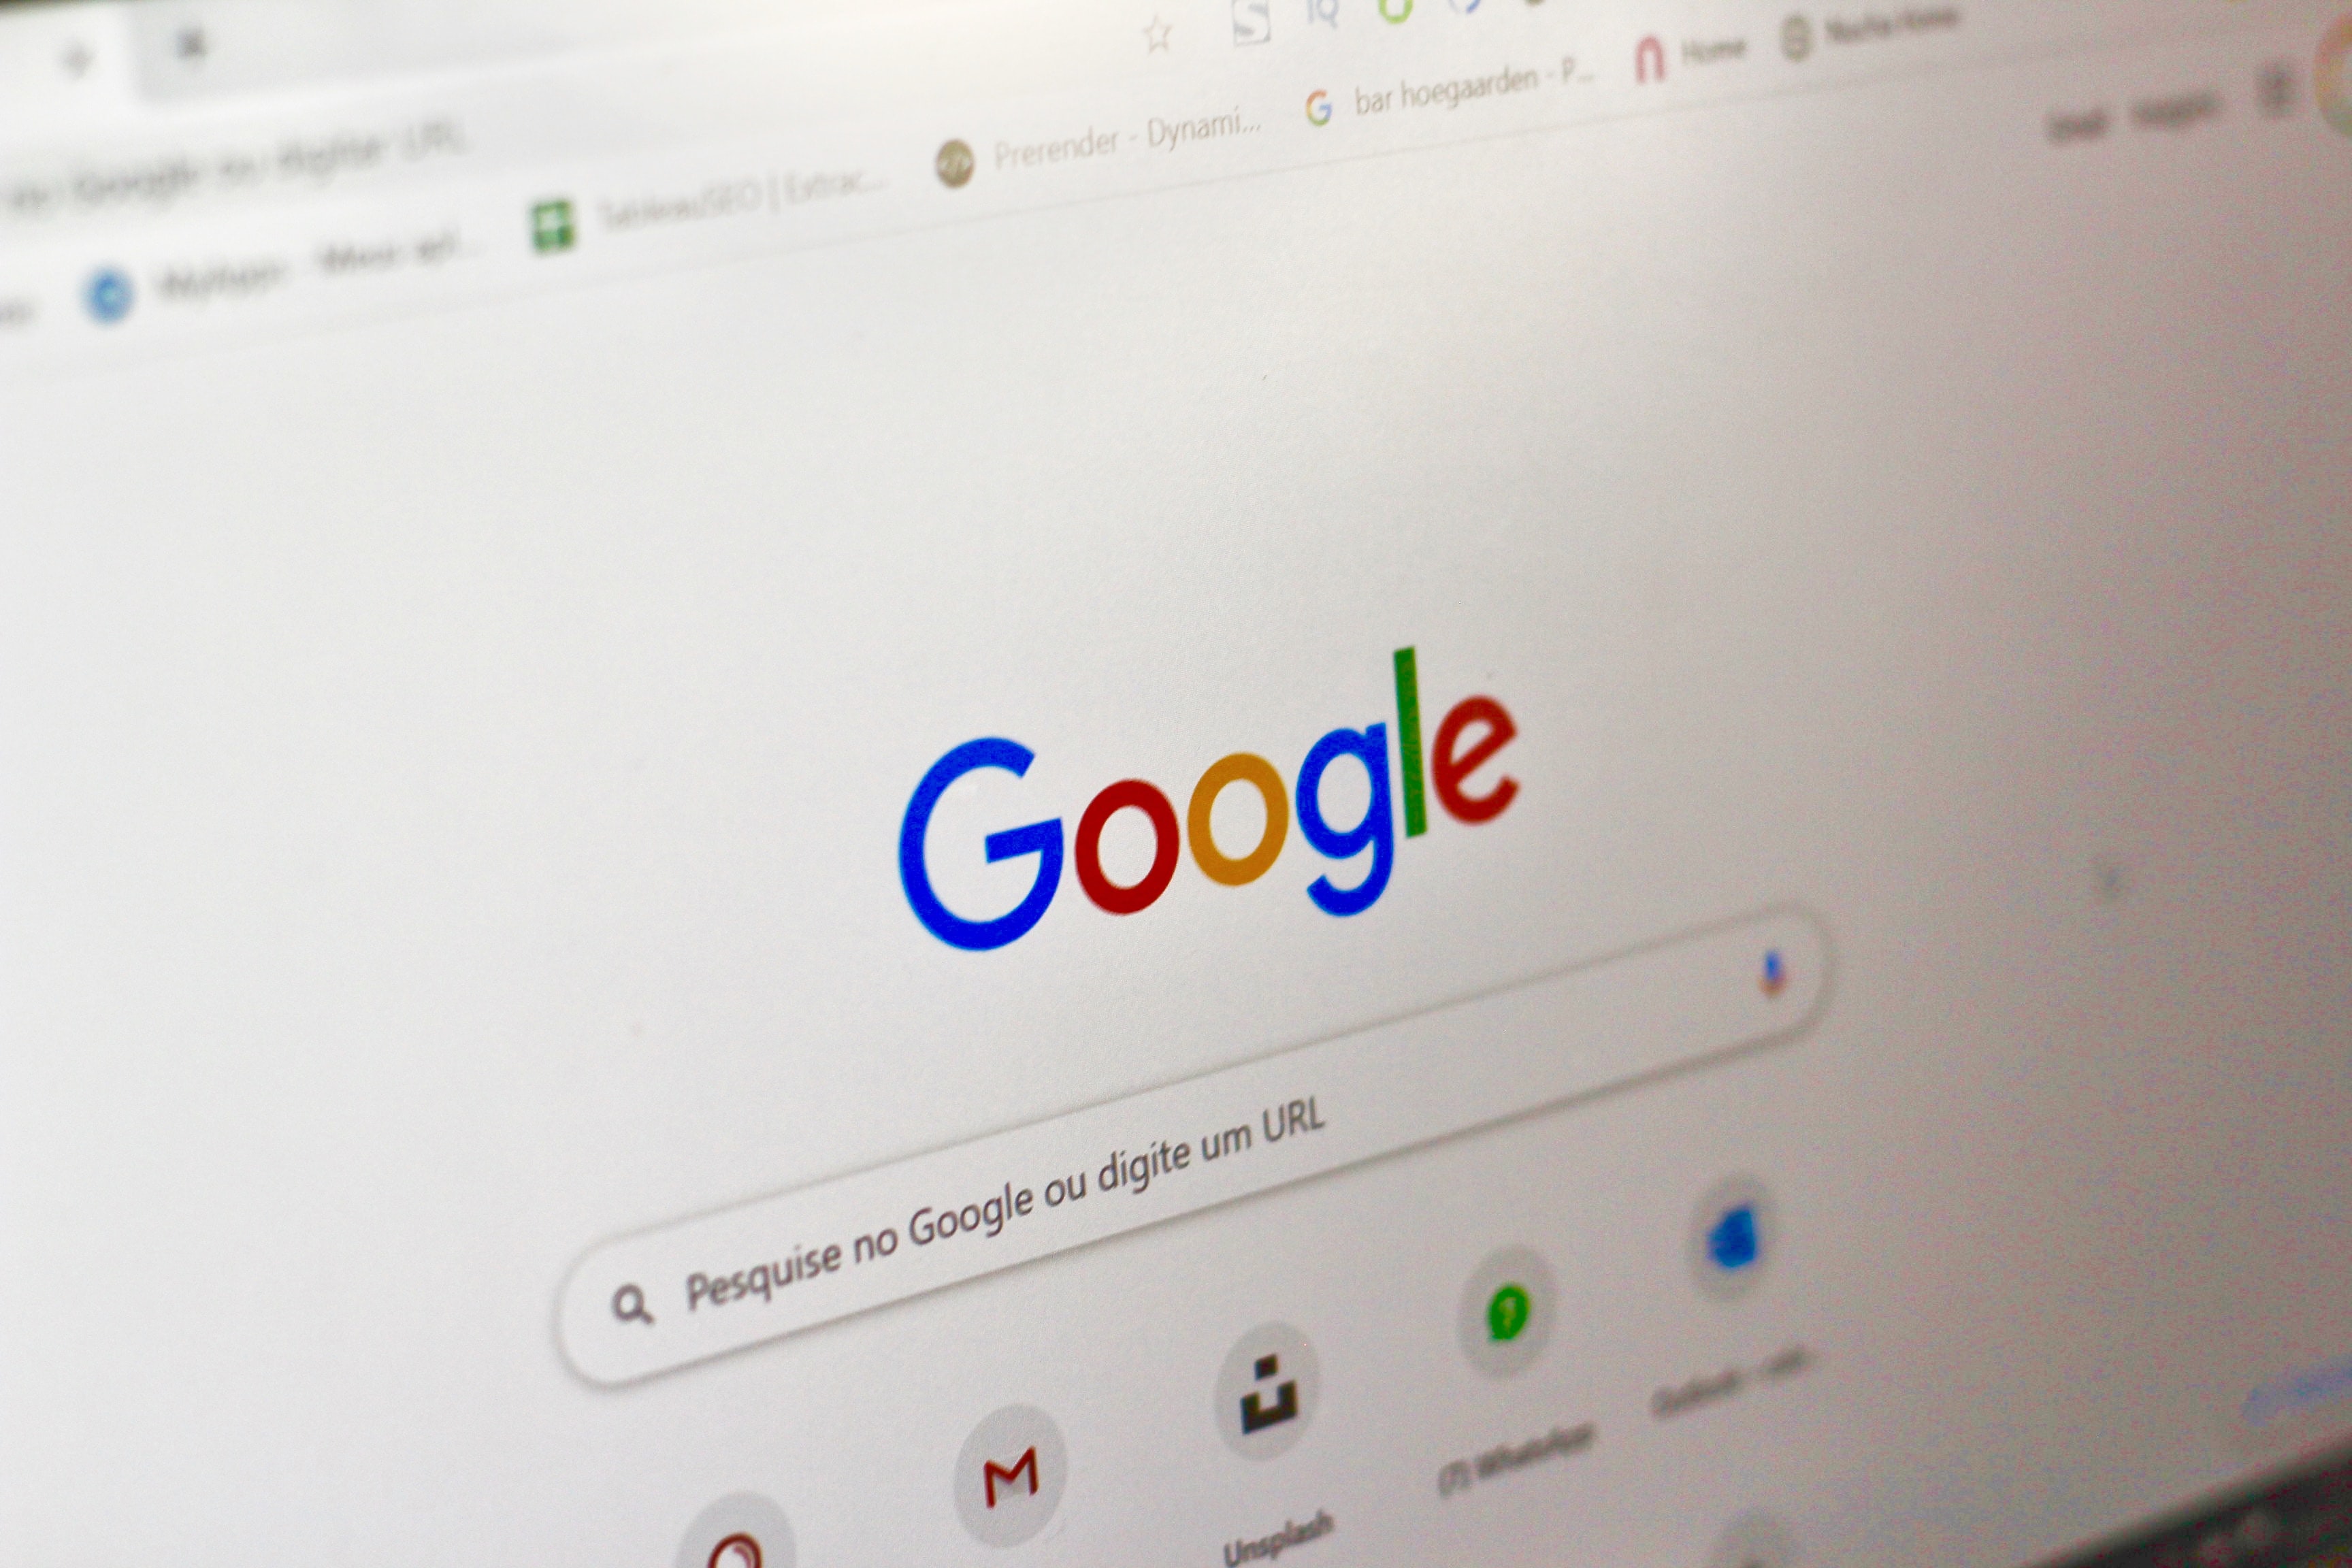 Temukan Bug di Google, Remaja SMK Semarang Ini Diganjar Rp75 Juta 